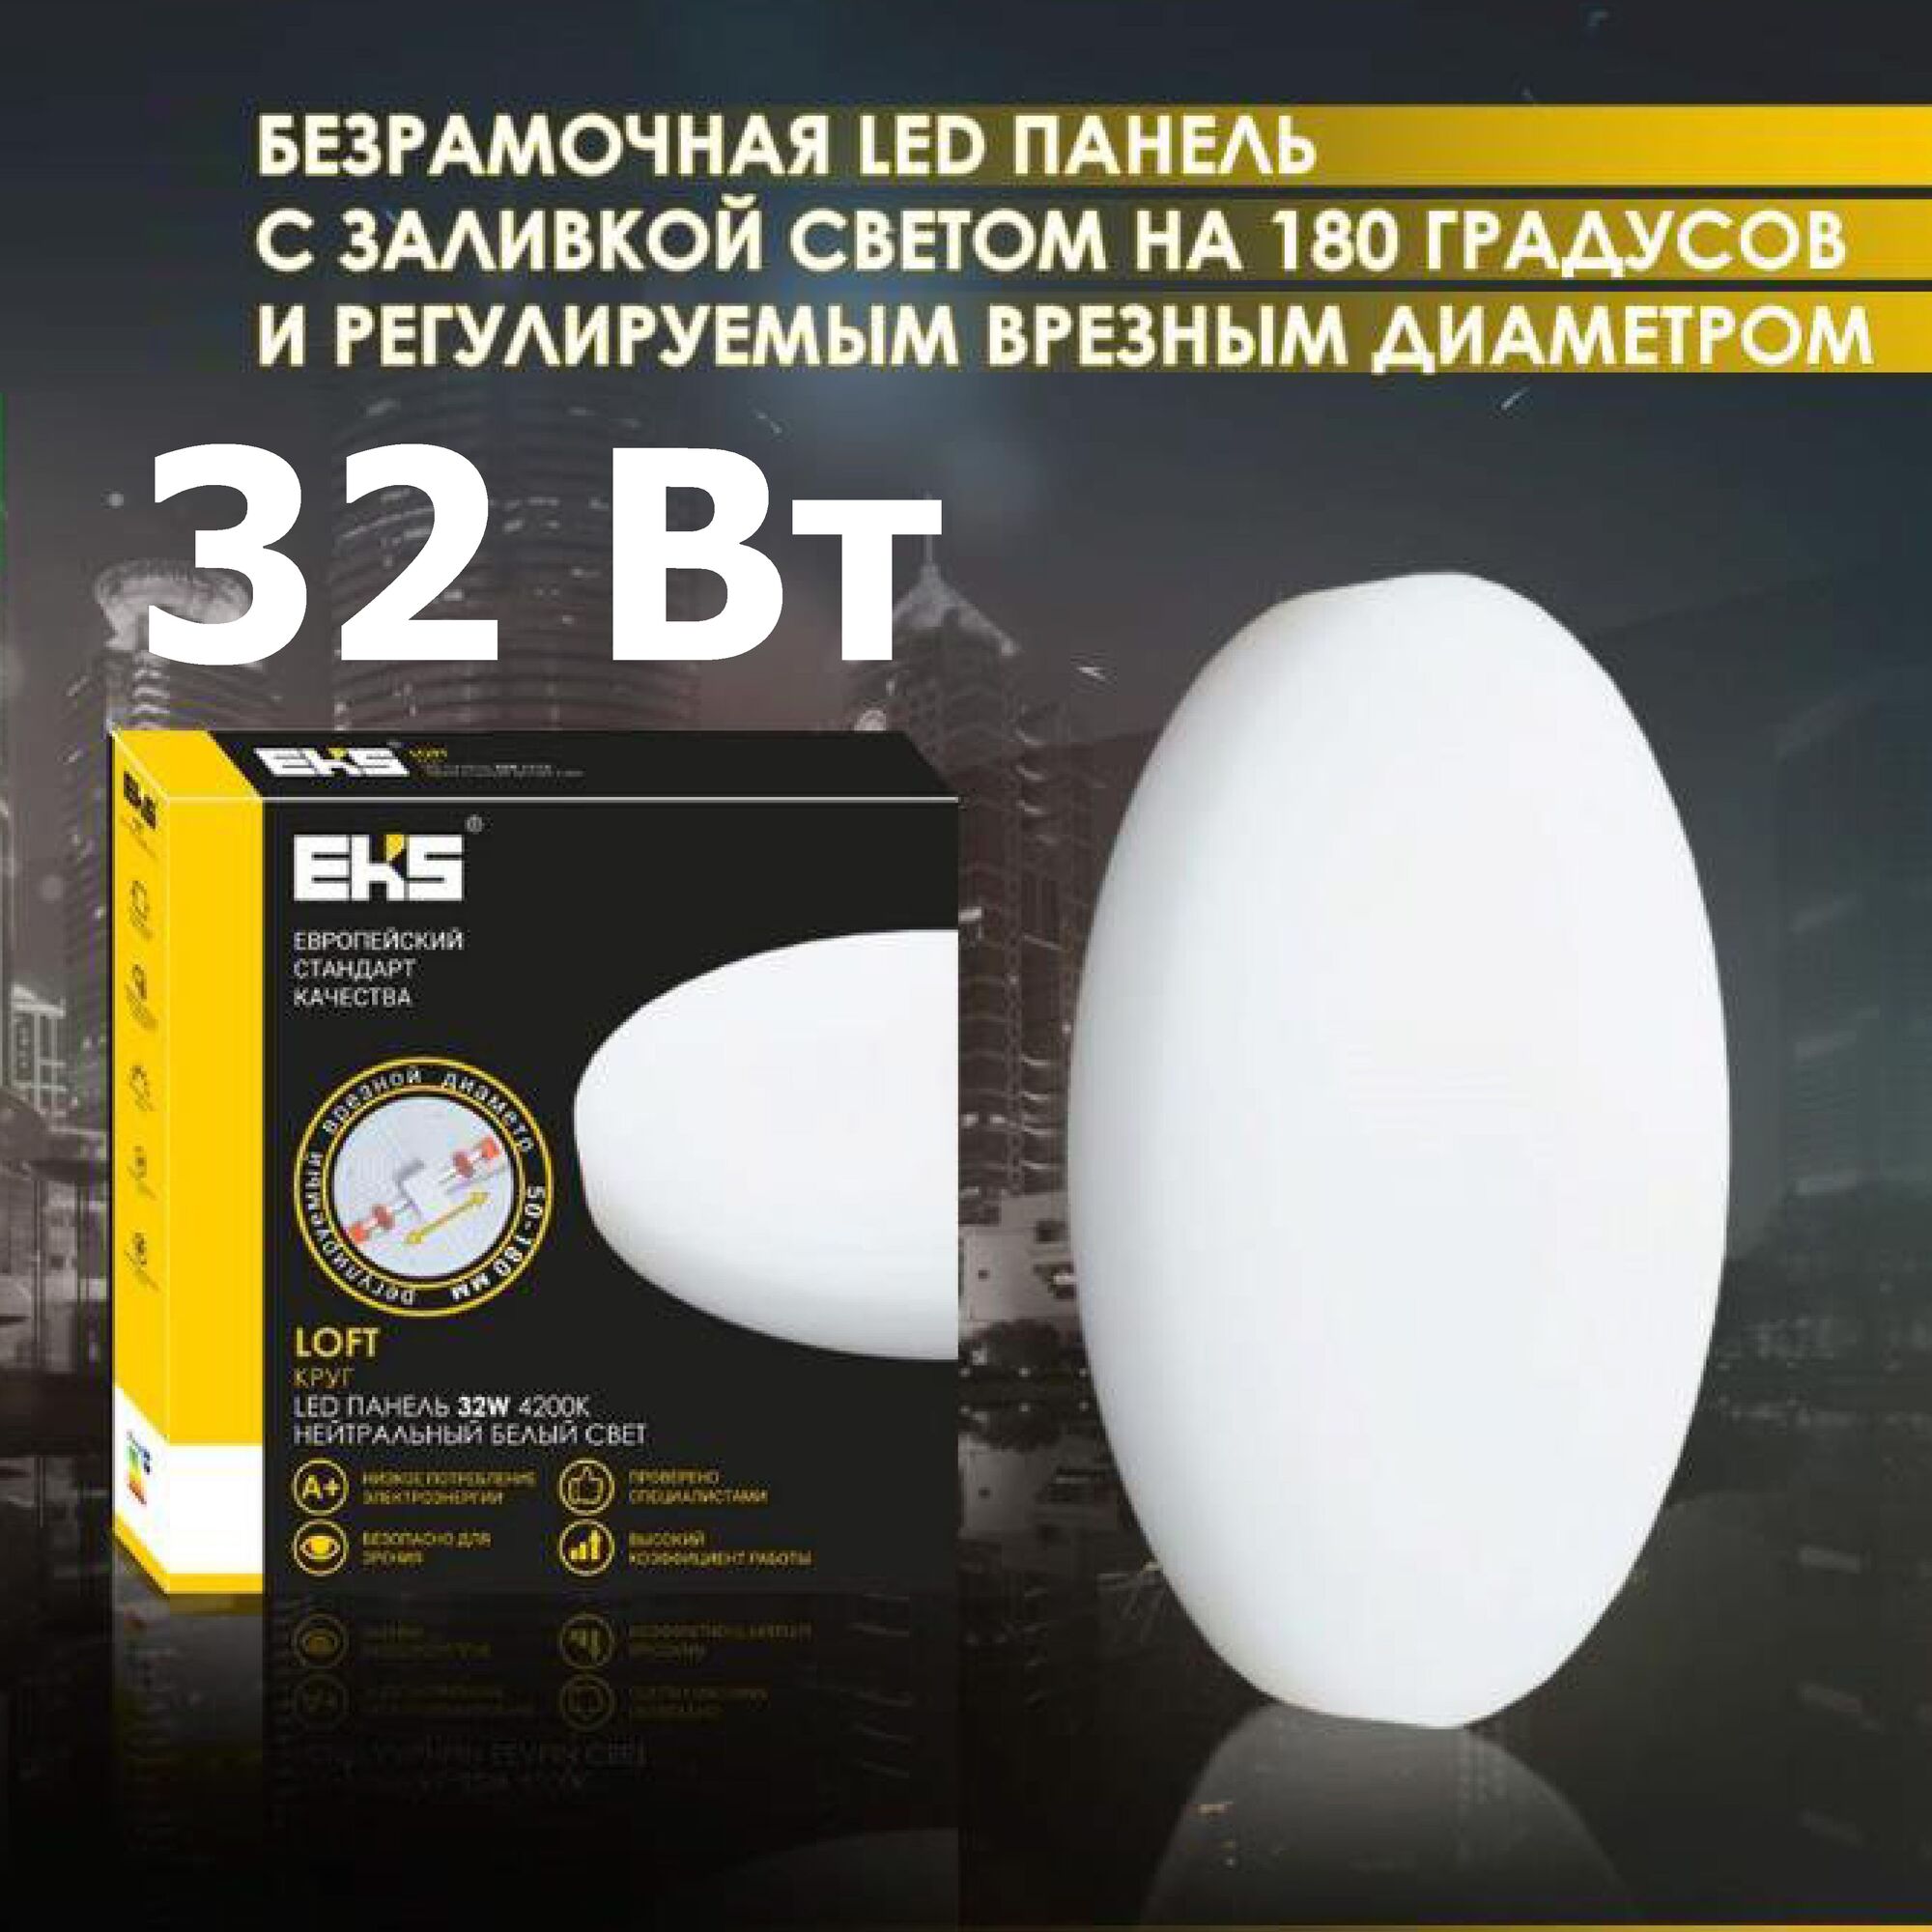 LED панель LOFT КРУГ , 32W, 4200K, 3000ЛМ, D220*50-140*40